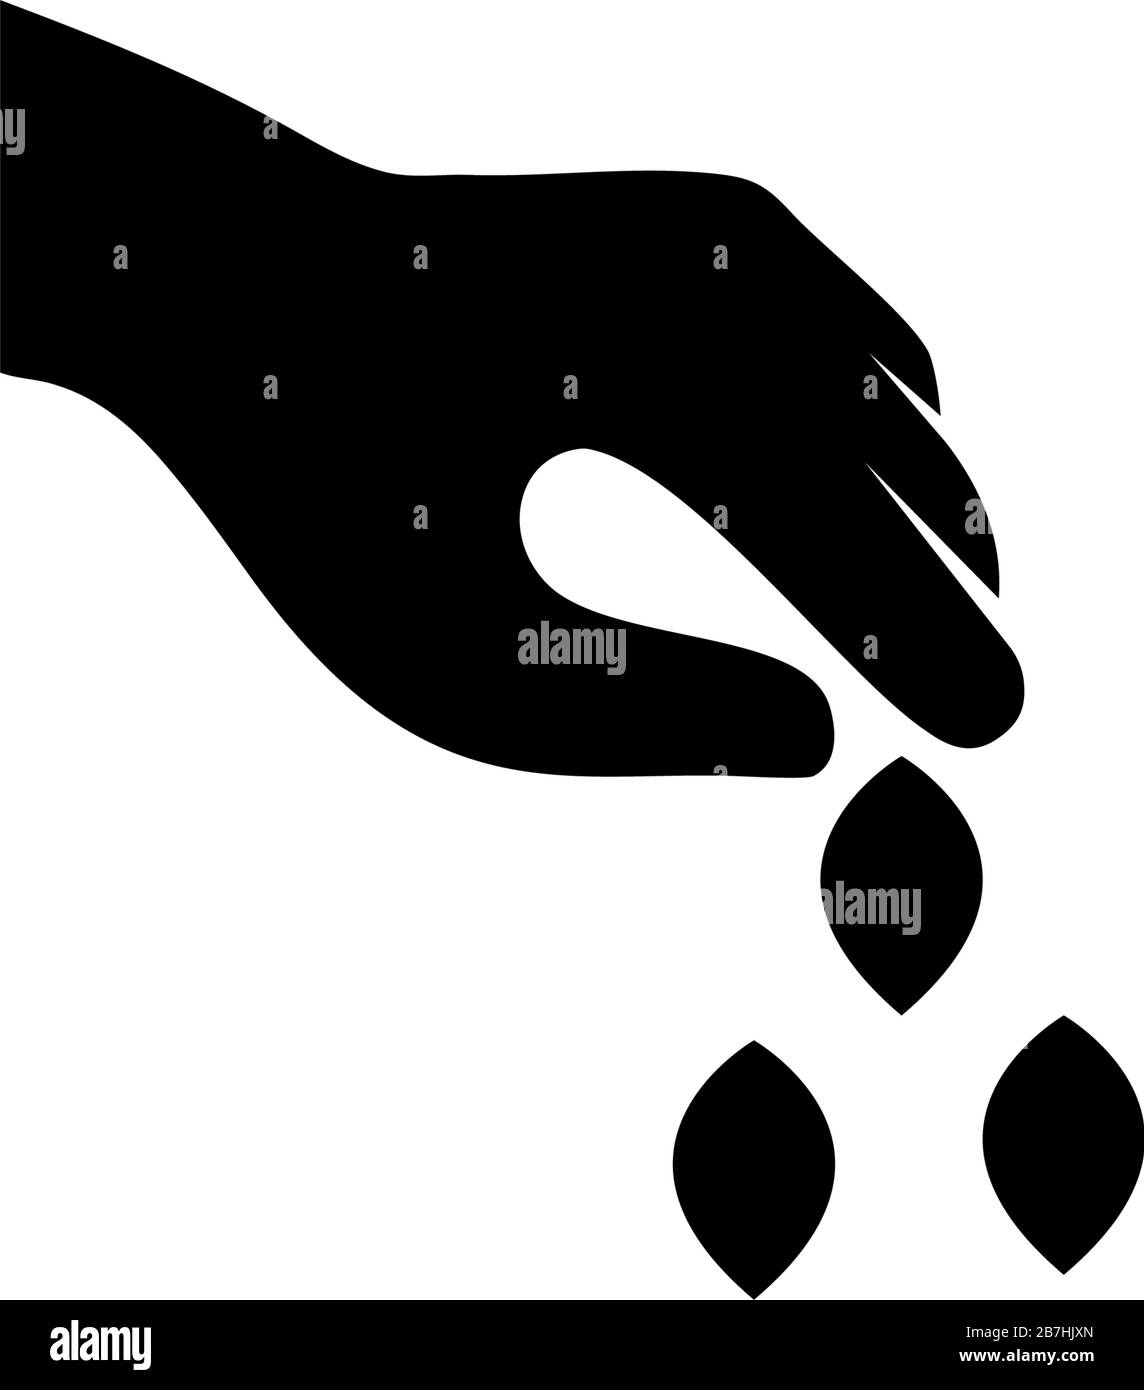 Hände Pflanzen Samen, Gartenbau, Landwirtschaft. Abbildung des Symbols "flacher Vektor". Einfaches schwarzes Symbol auf weißem Hintergrund. Hände Pflanzen Samen, Gartenschild Stock Vektor